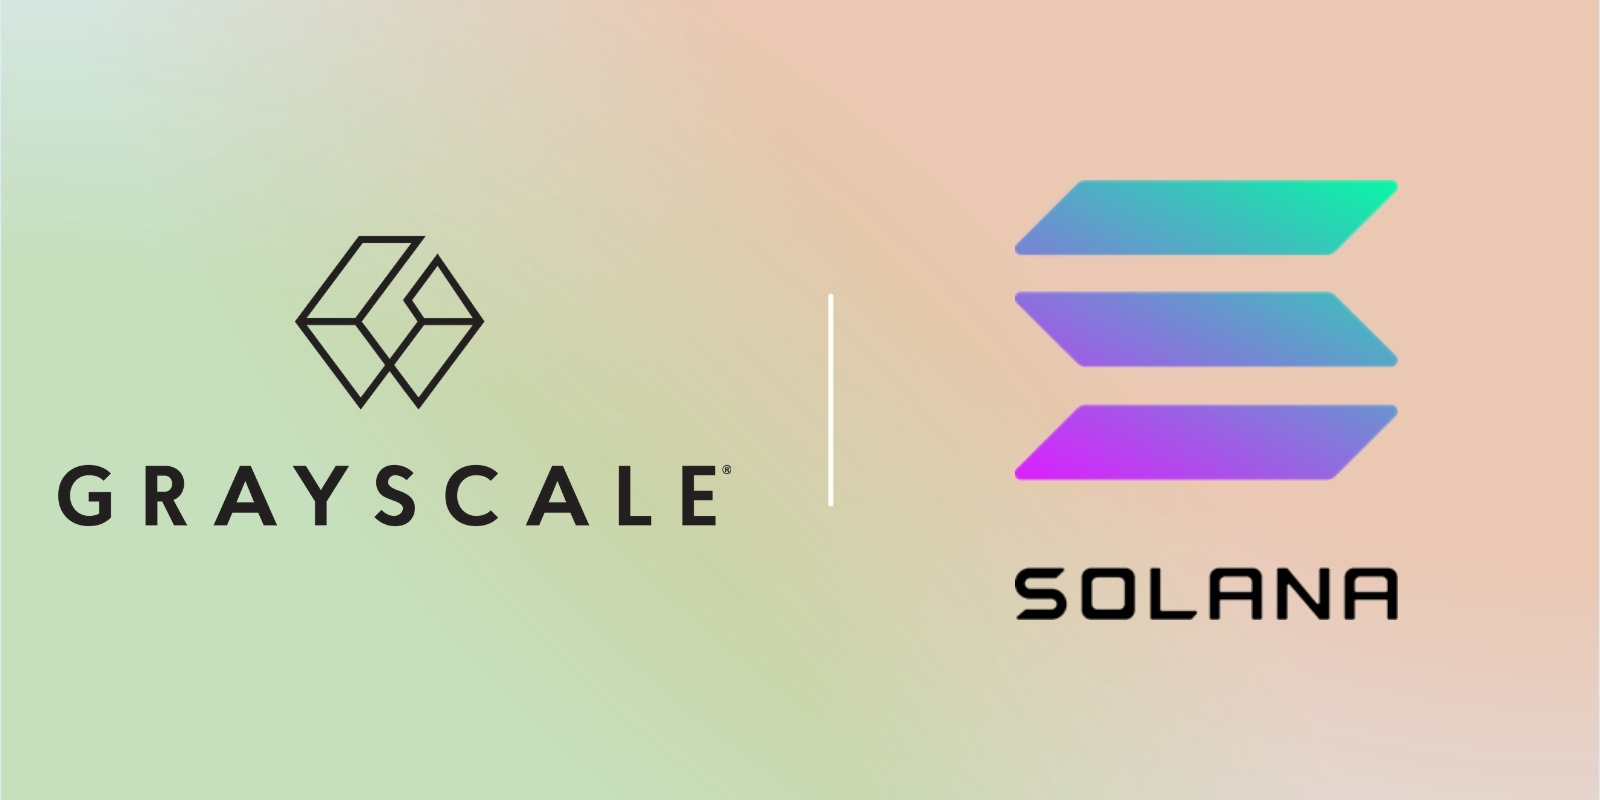 Le gestionnaire d'actifs Grayscale crée un fonds pour le SOL de la blockchain Solana